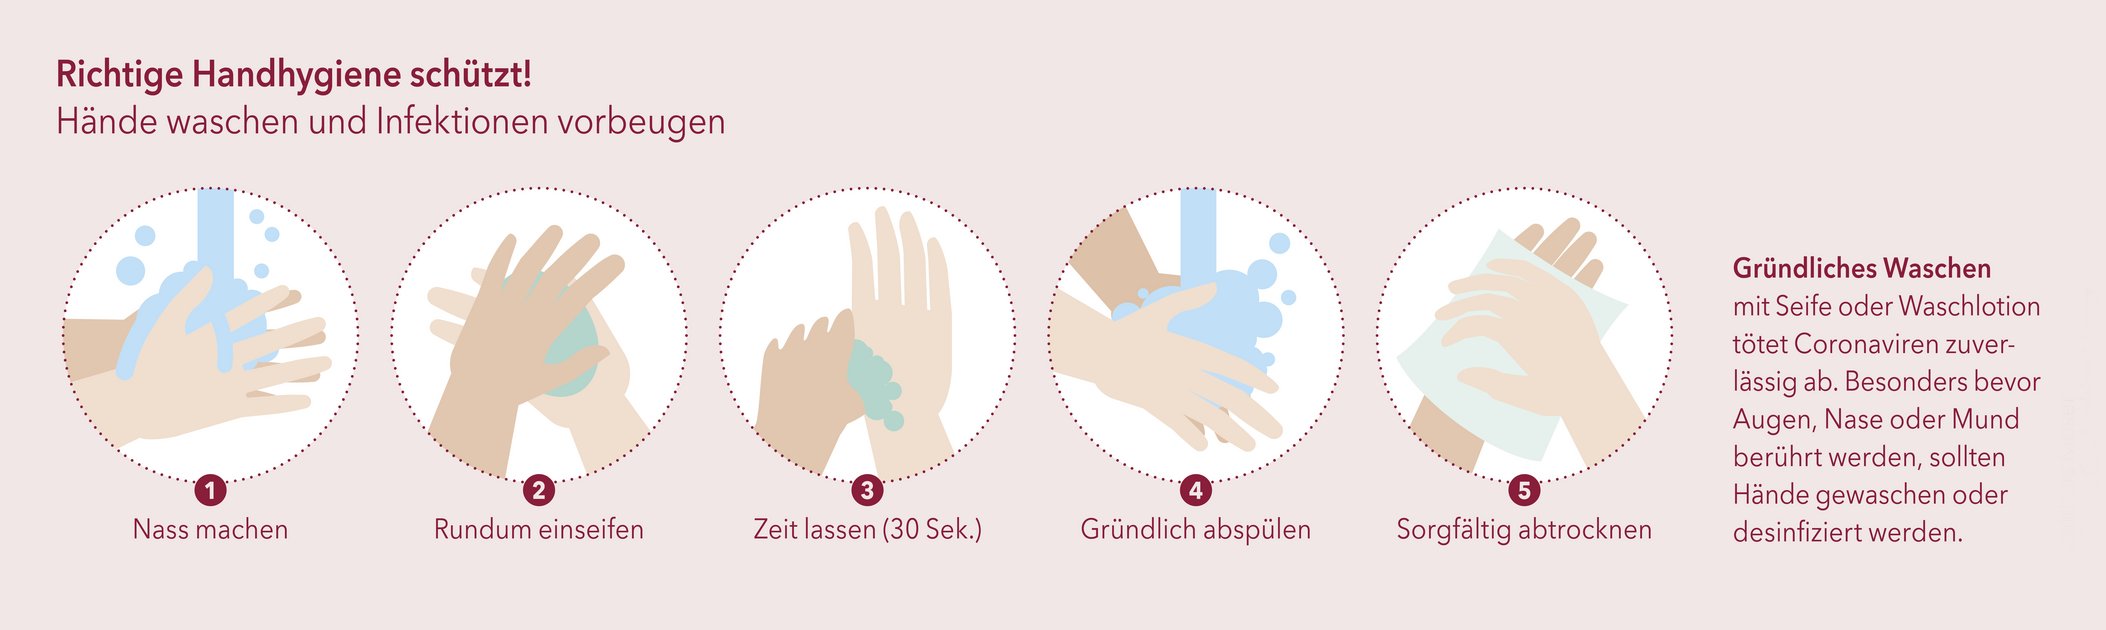 Richtige Handhygiene schützt. Grafik © Matthias Moser/Vetmeduni Vienna